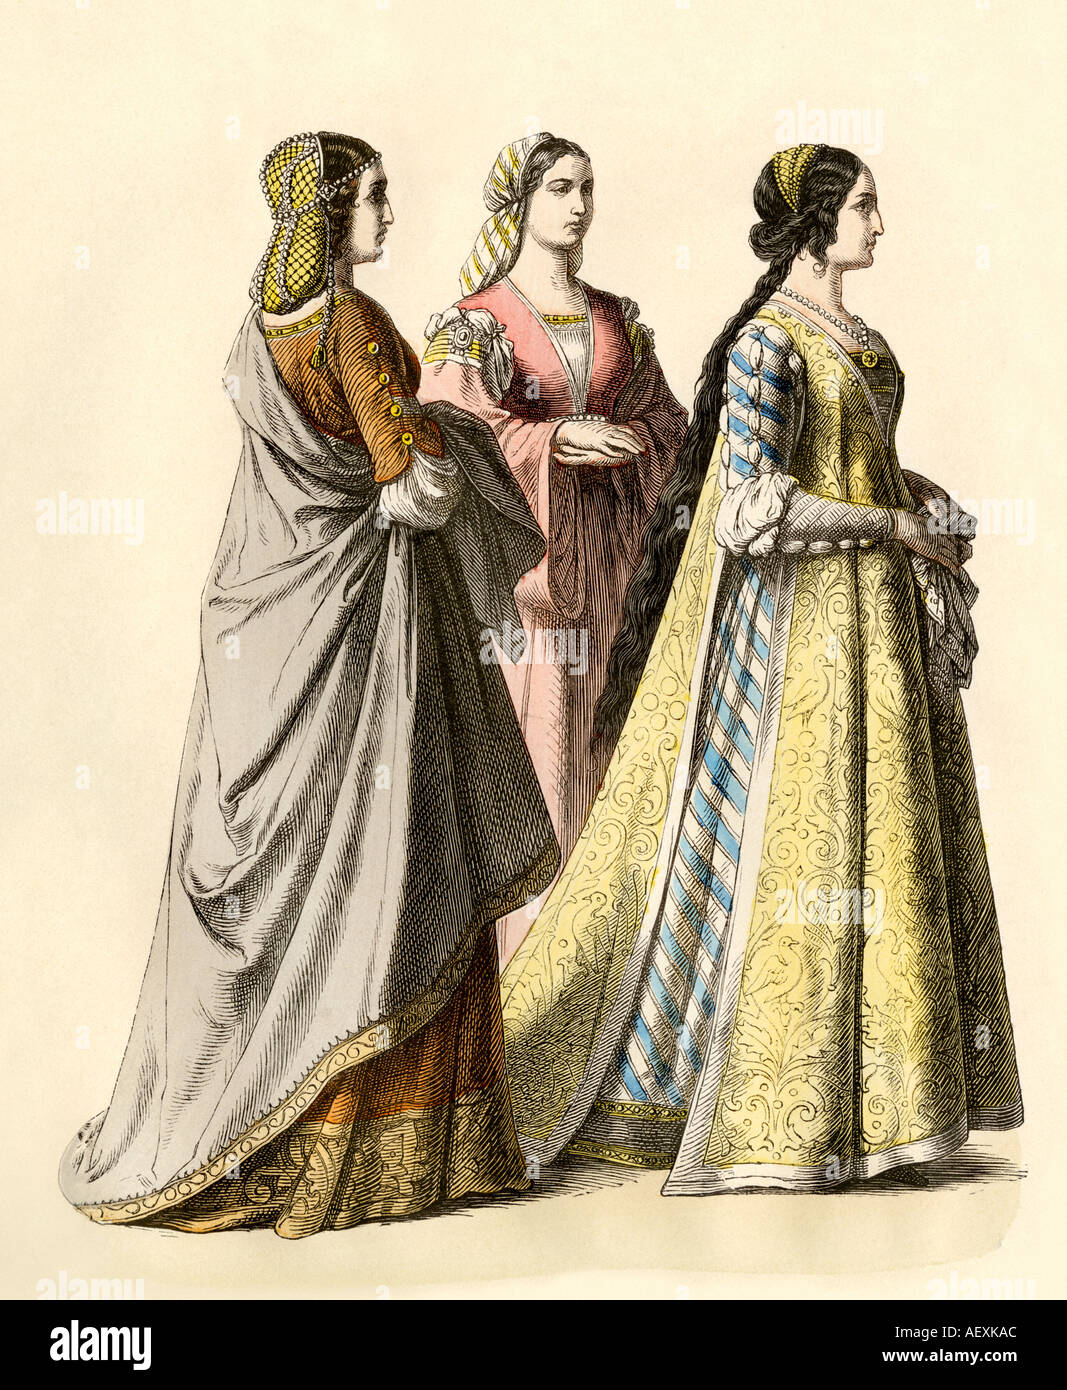 Nobles dames de Florence pendant la Renaissance ou au début des années 1400. Impression couleur à la main Banque D'Images